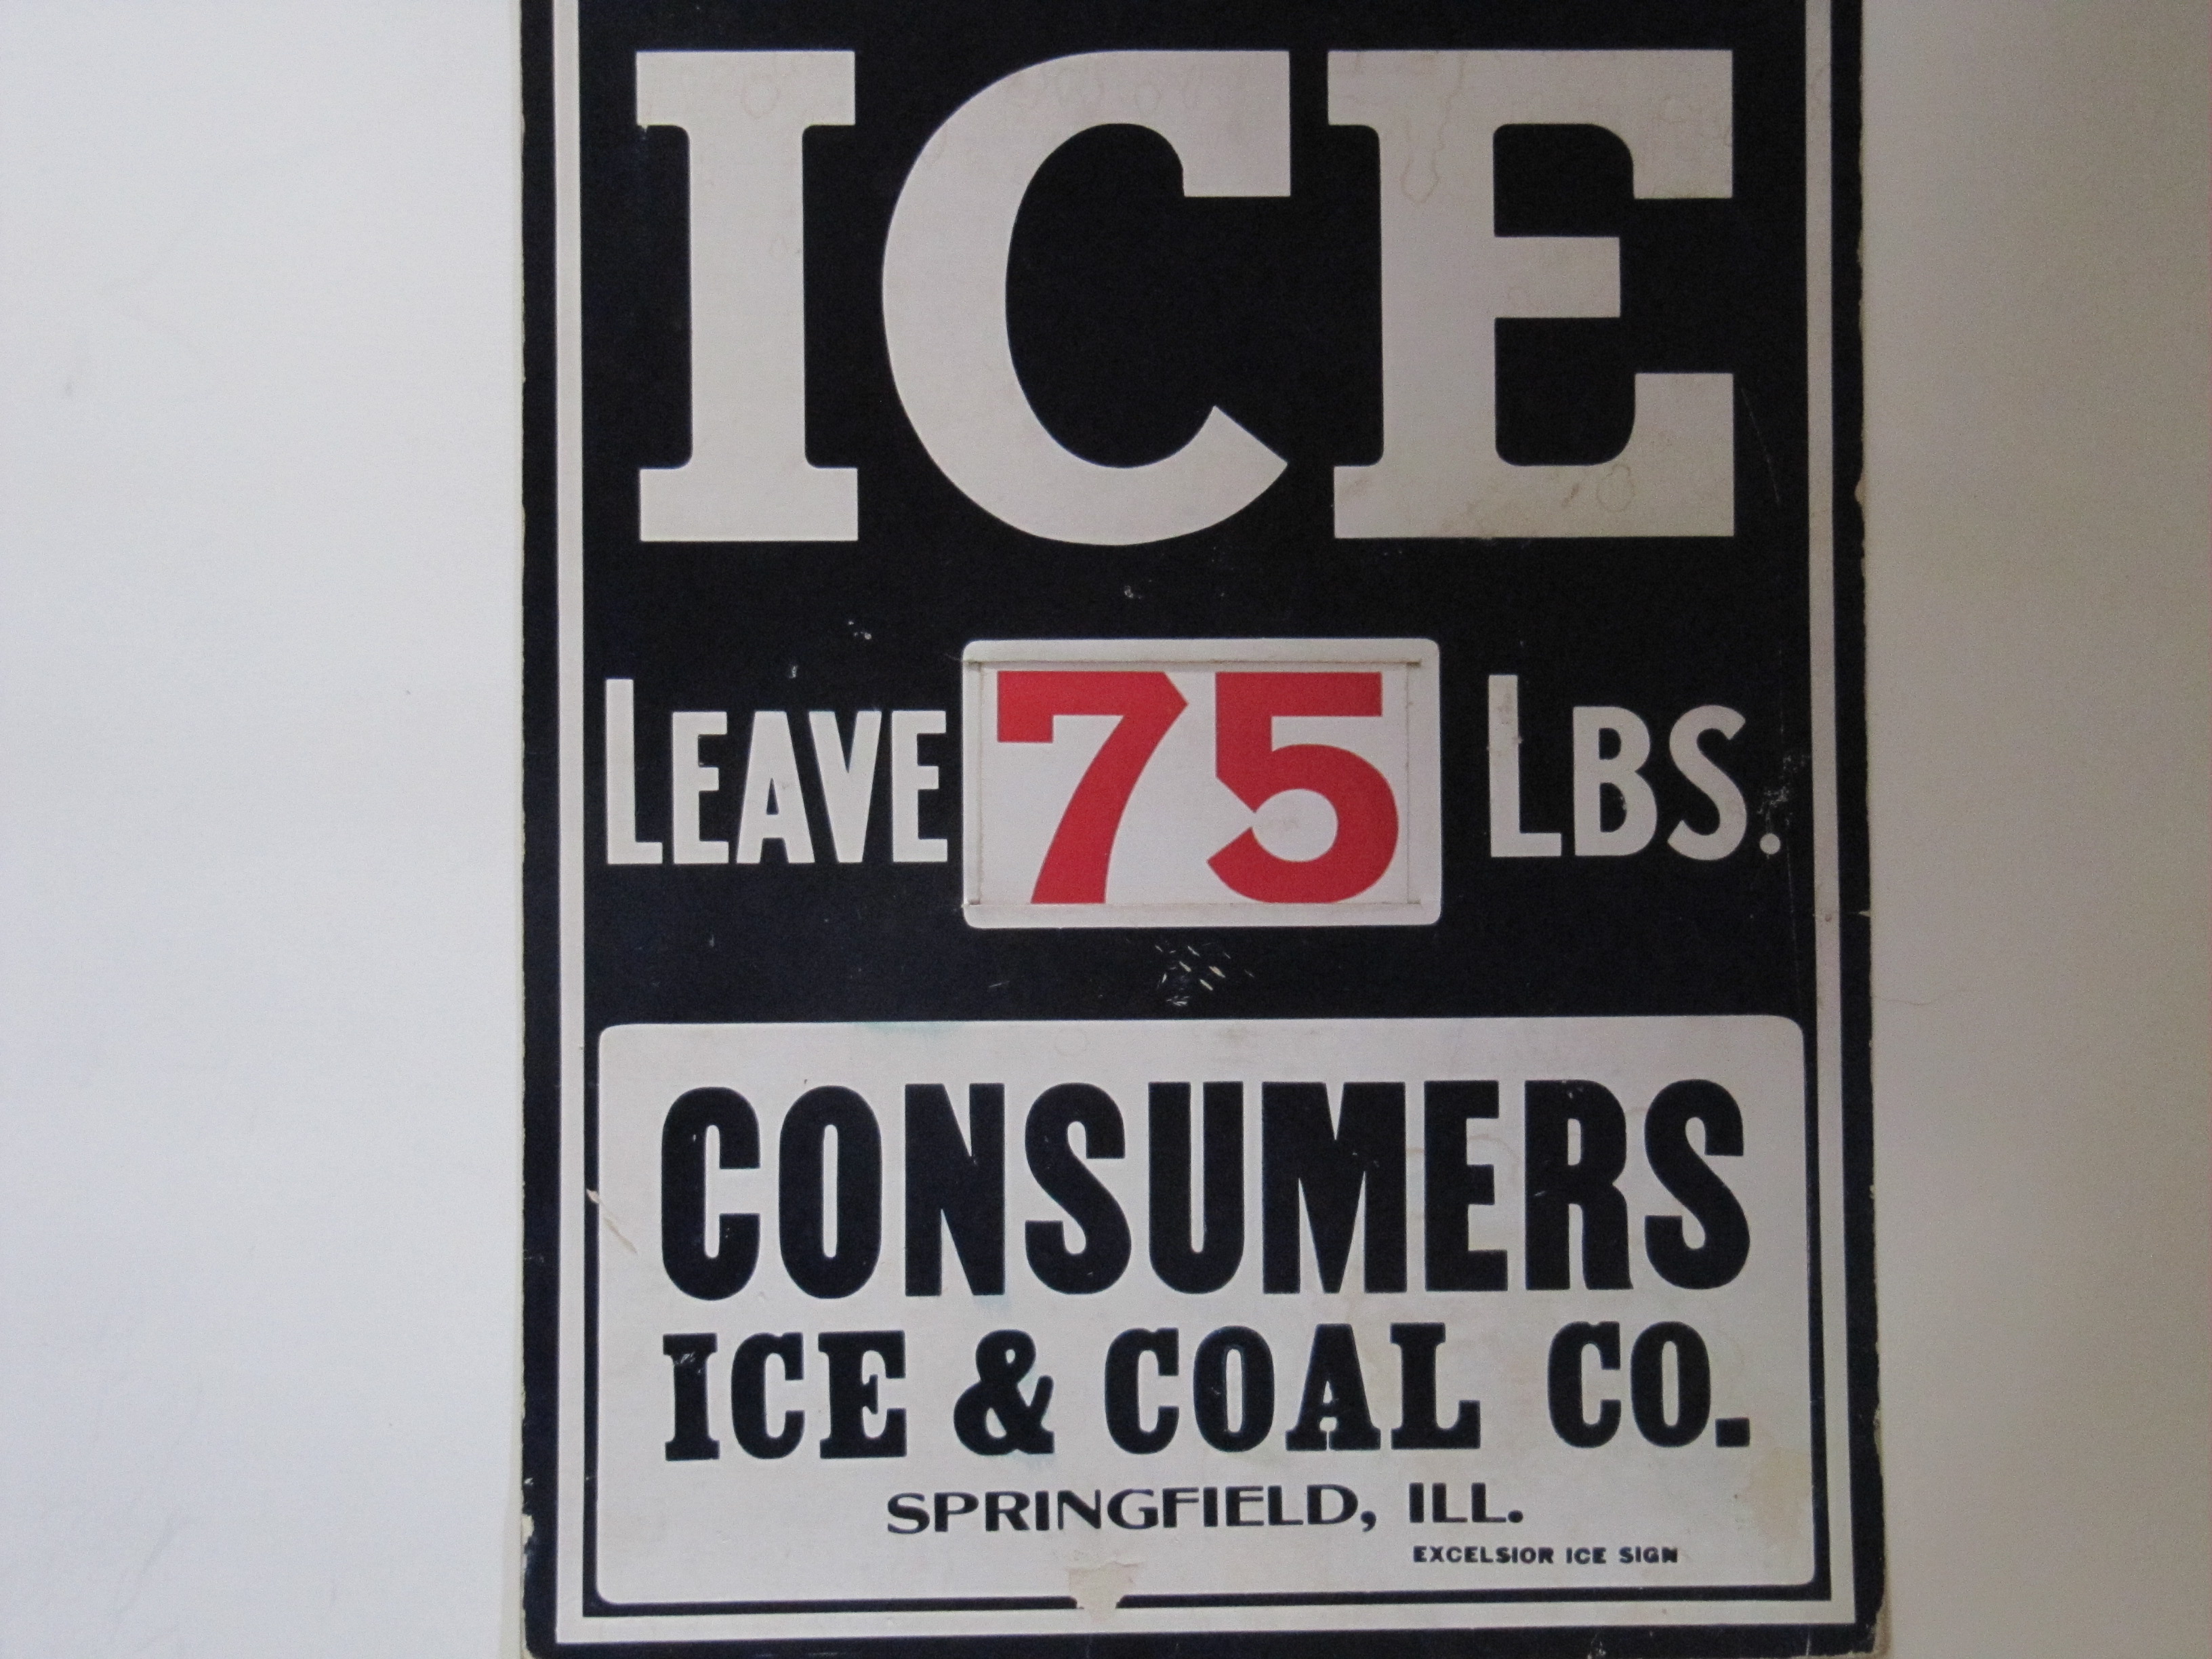 Consumers Ice & Coal Co.